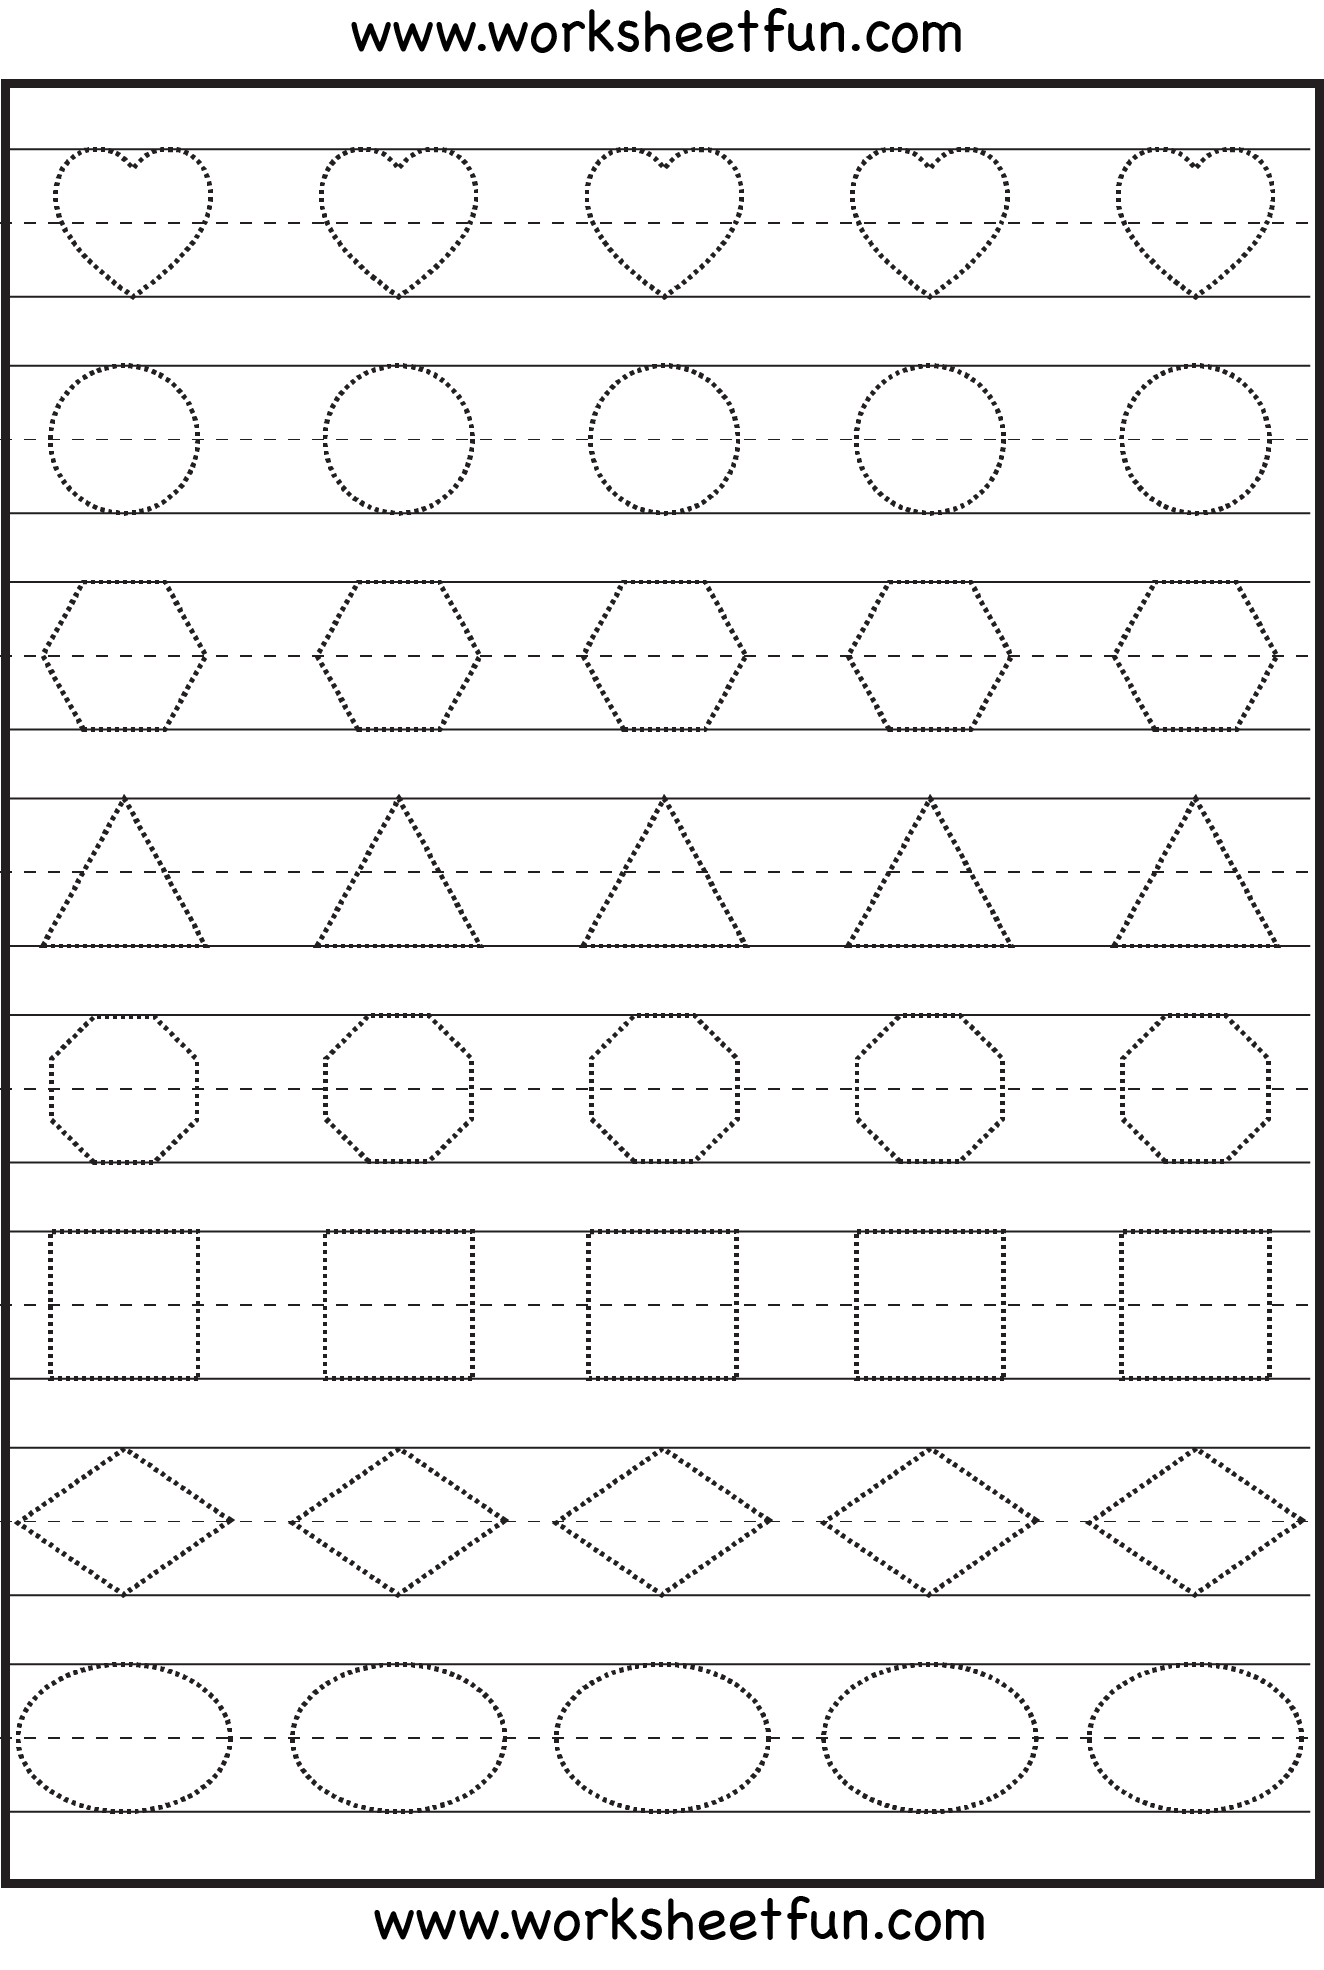 Free Printable Preschool Worksheets Age 4 5